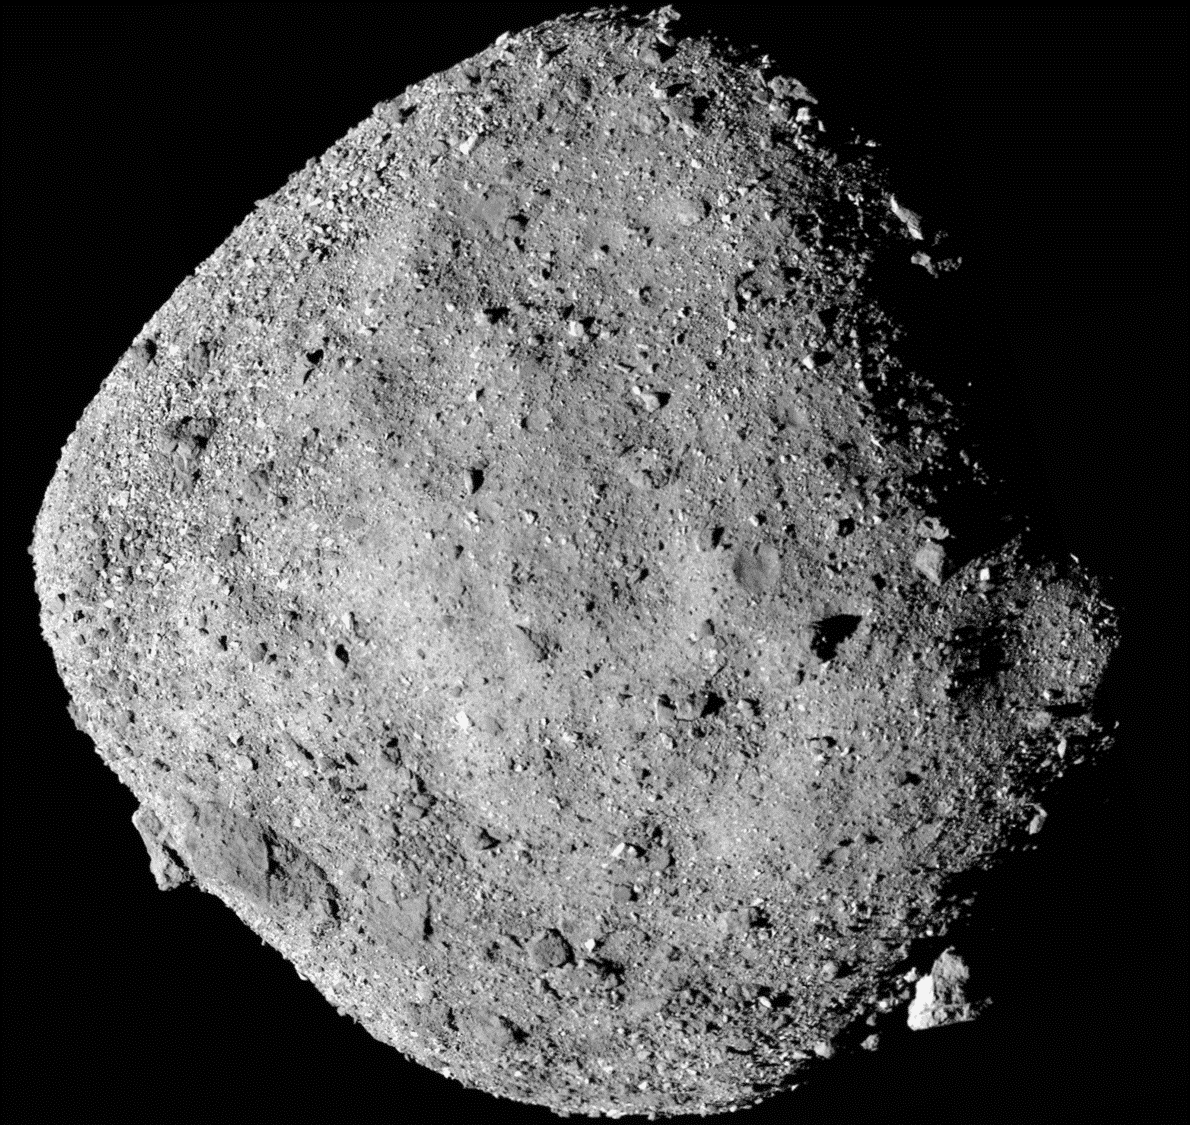 Asteroid Bennu im Porträt